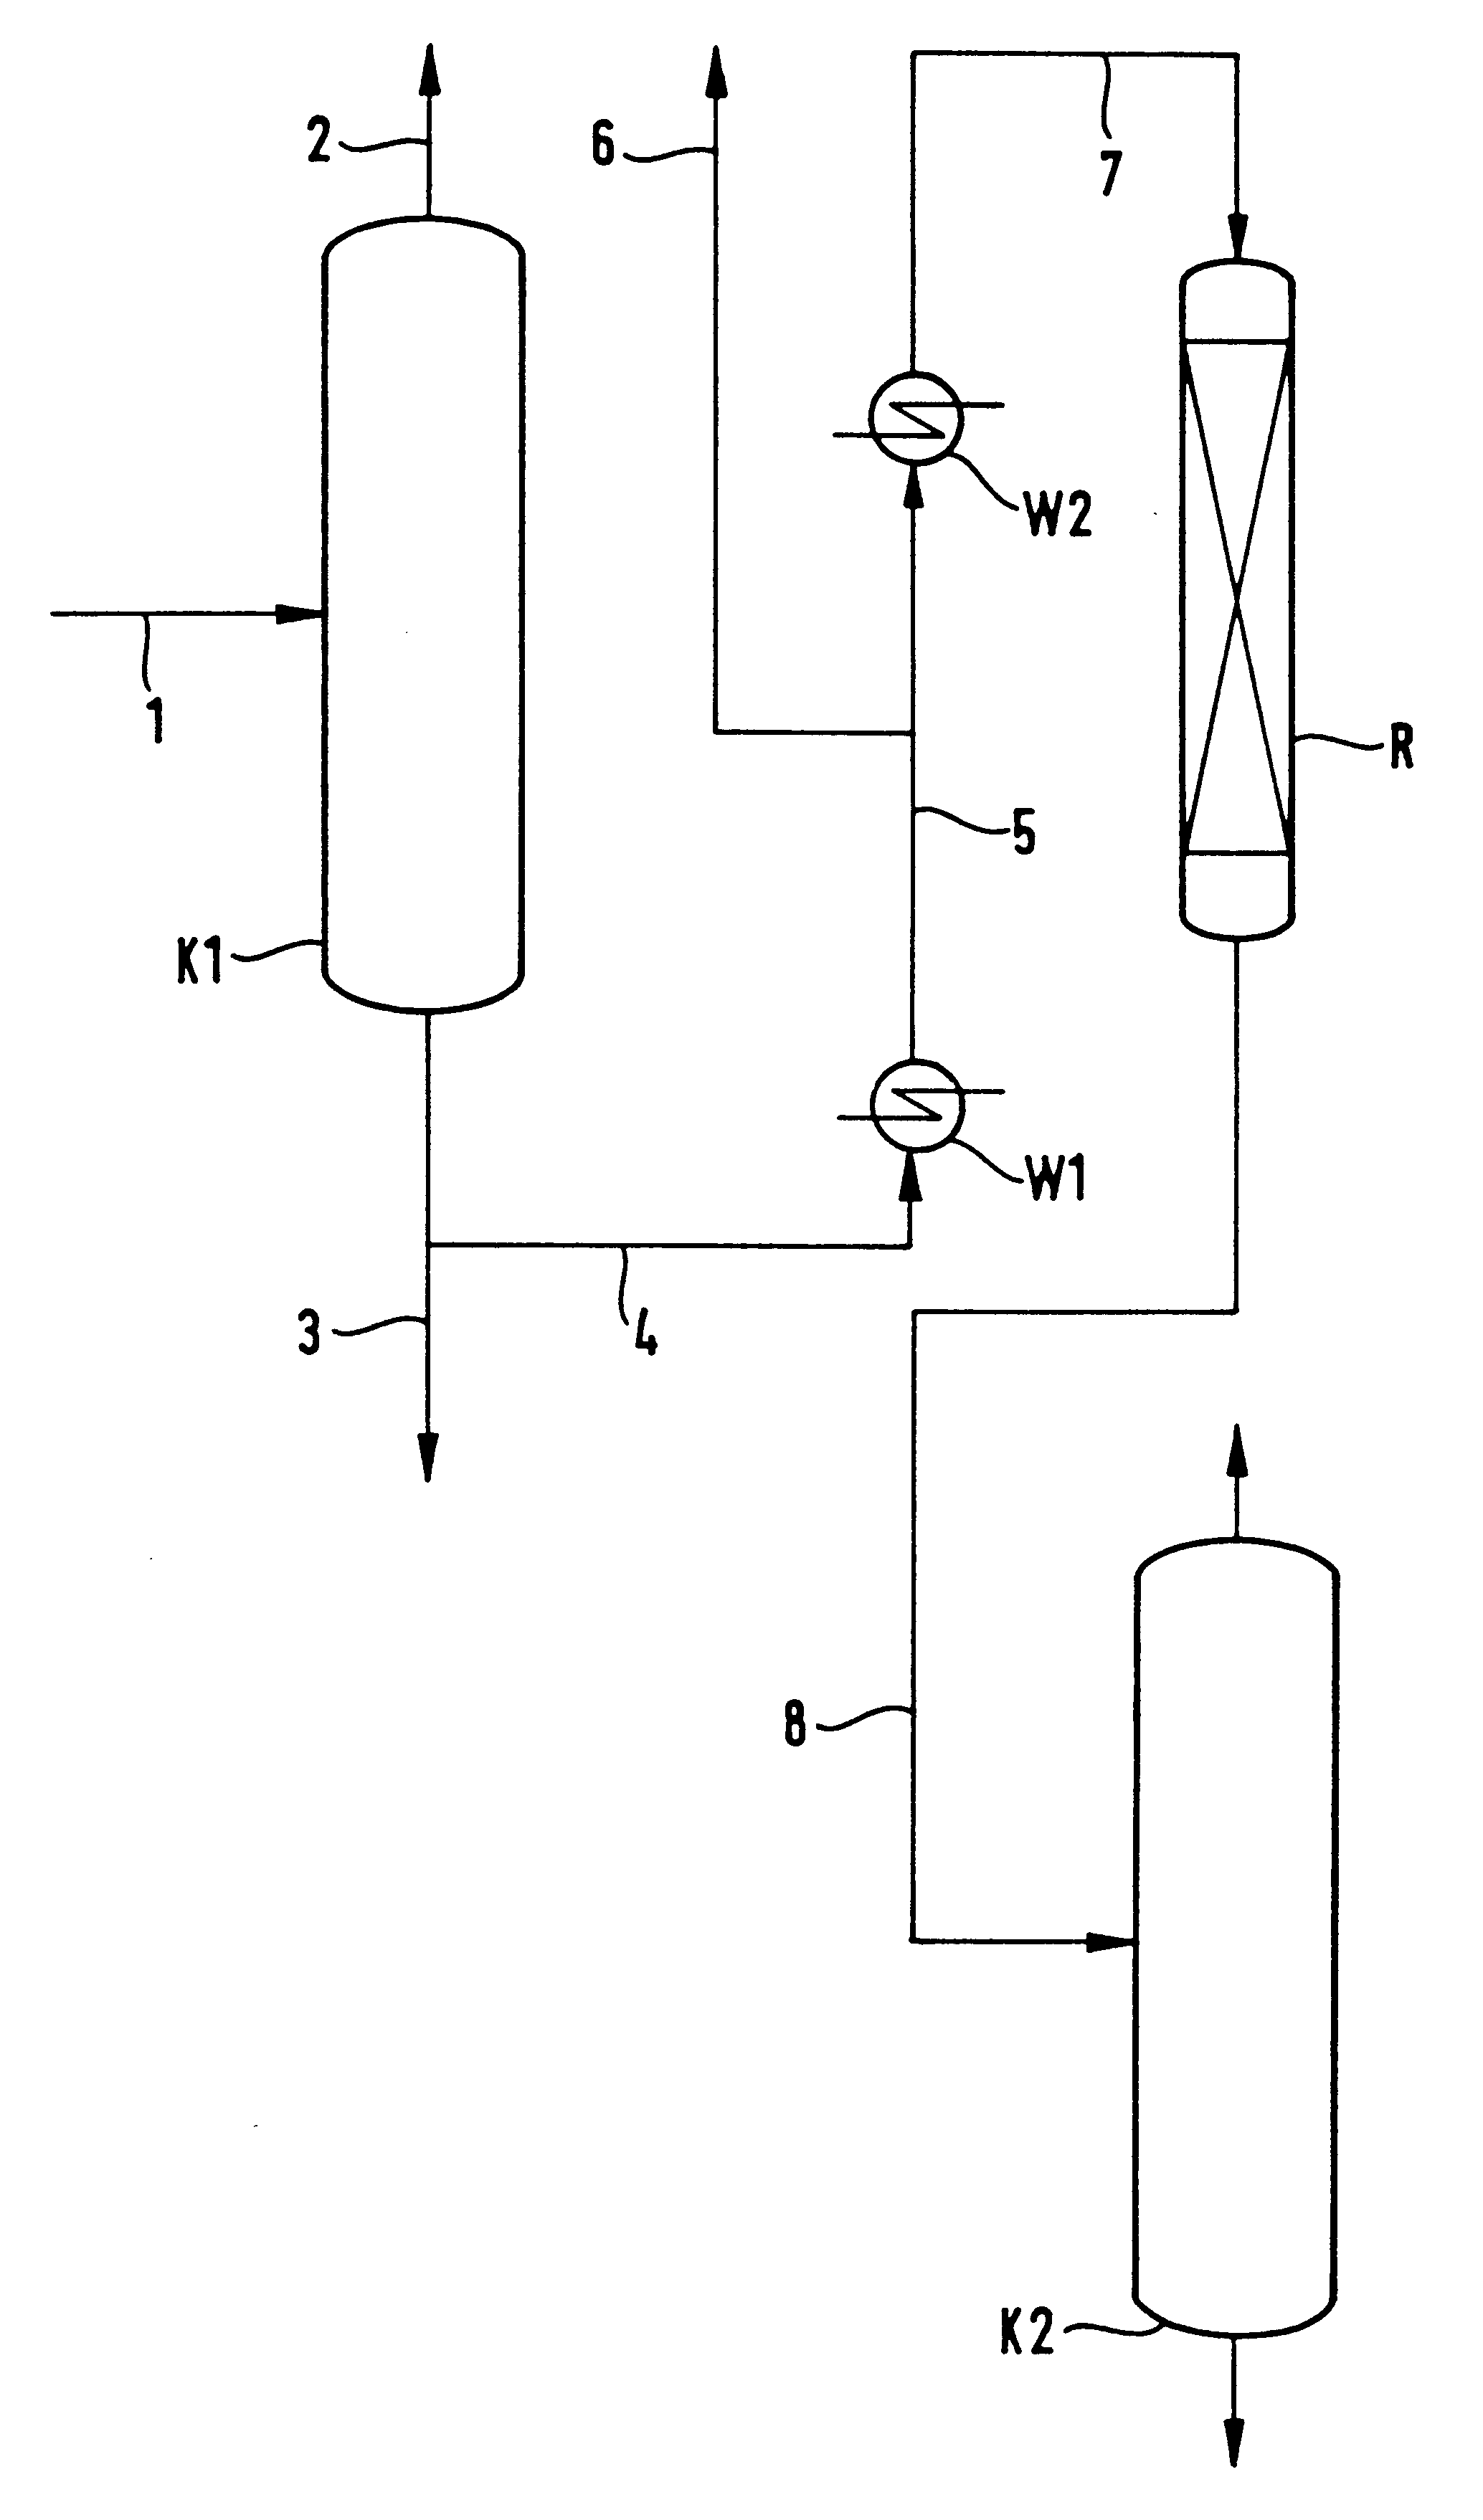 Process and arrangement for producing tetrahydrofuran